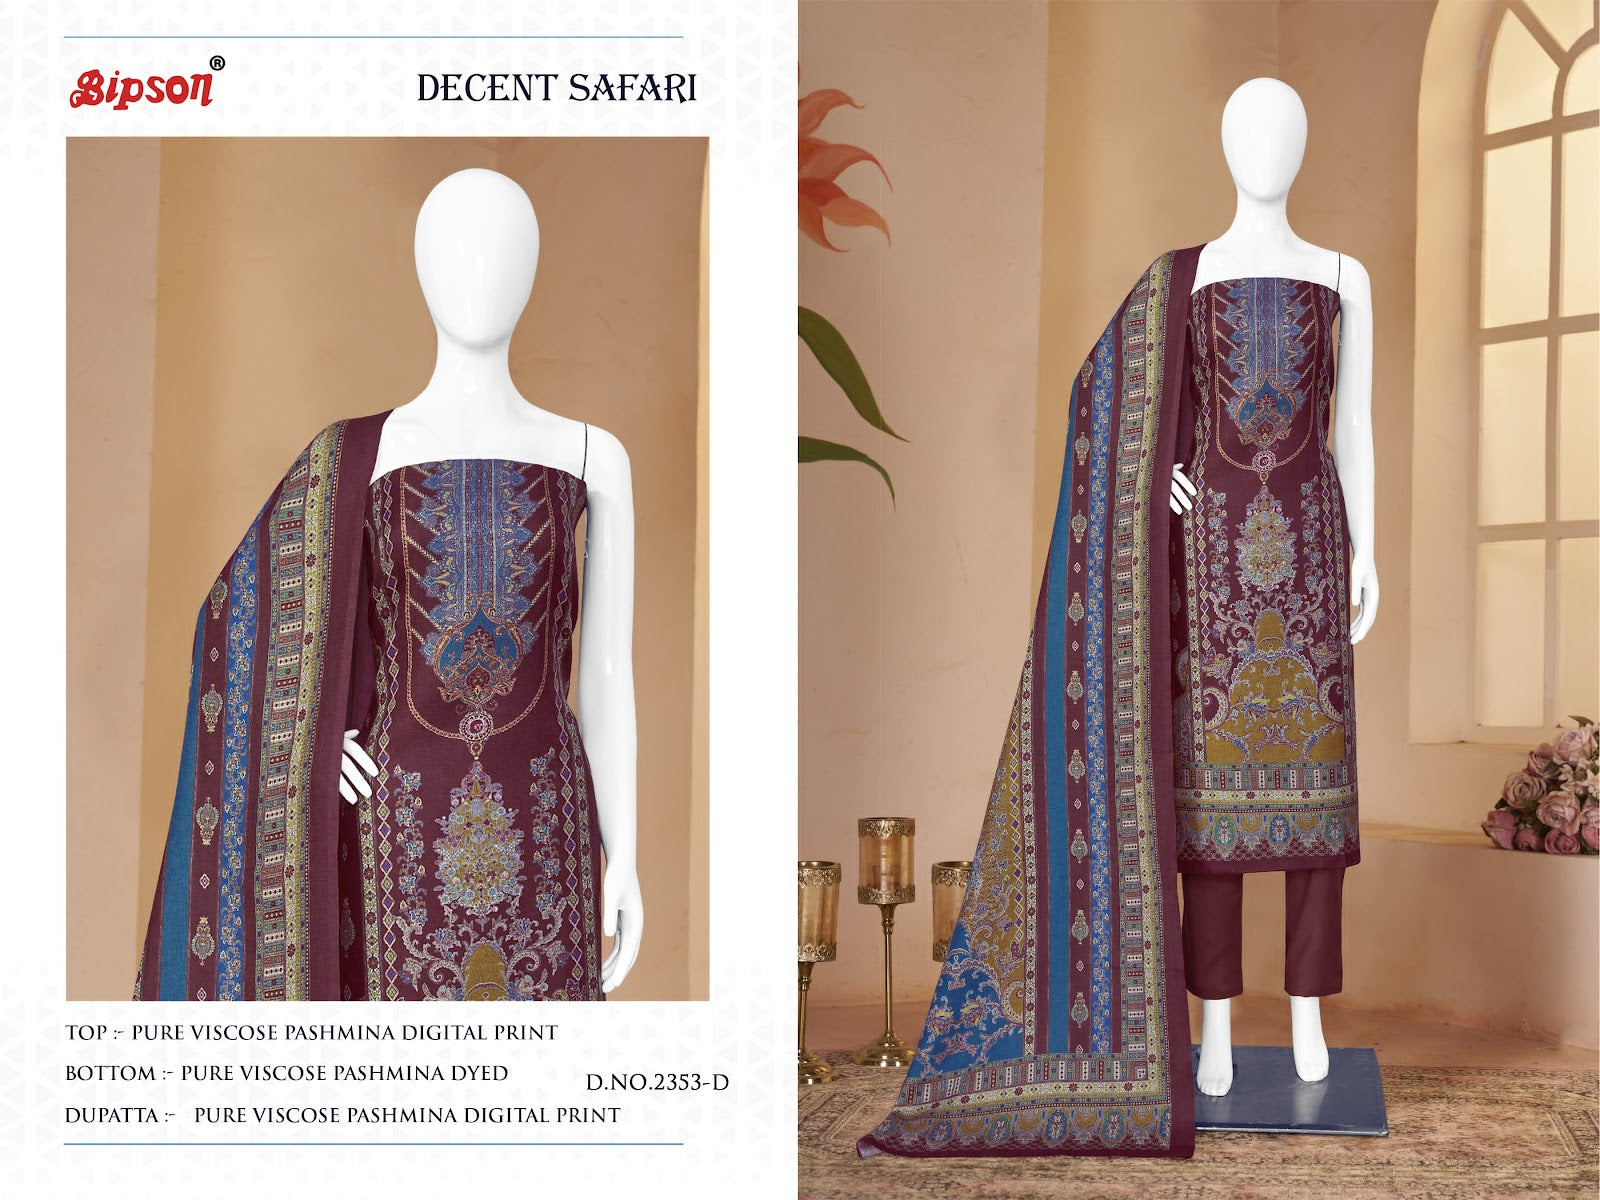 Decent Safari 2353 Bipson Prints Pashmina Suits